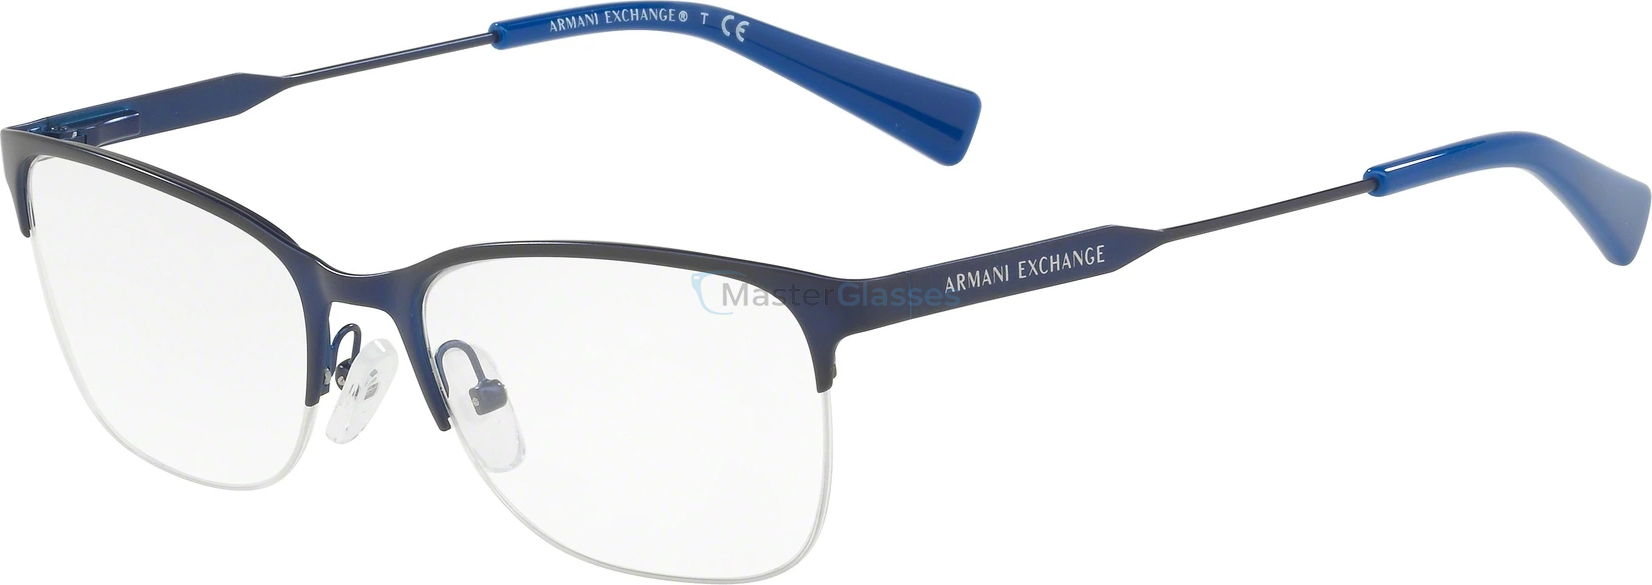  Armani exchange AX1023 6097 Matte Blue